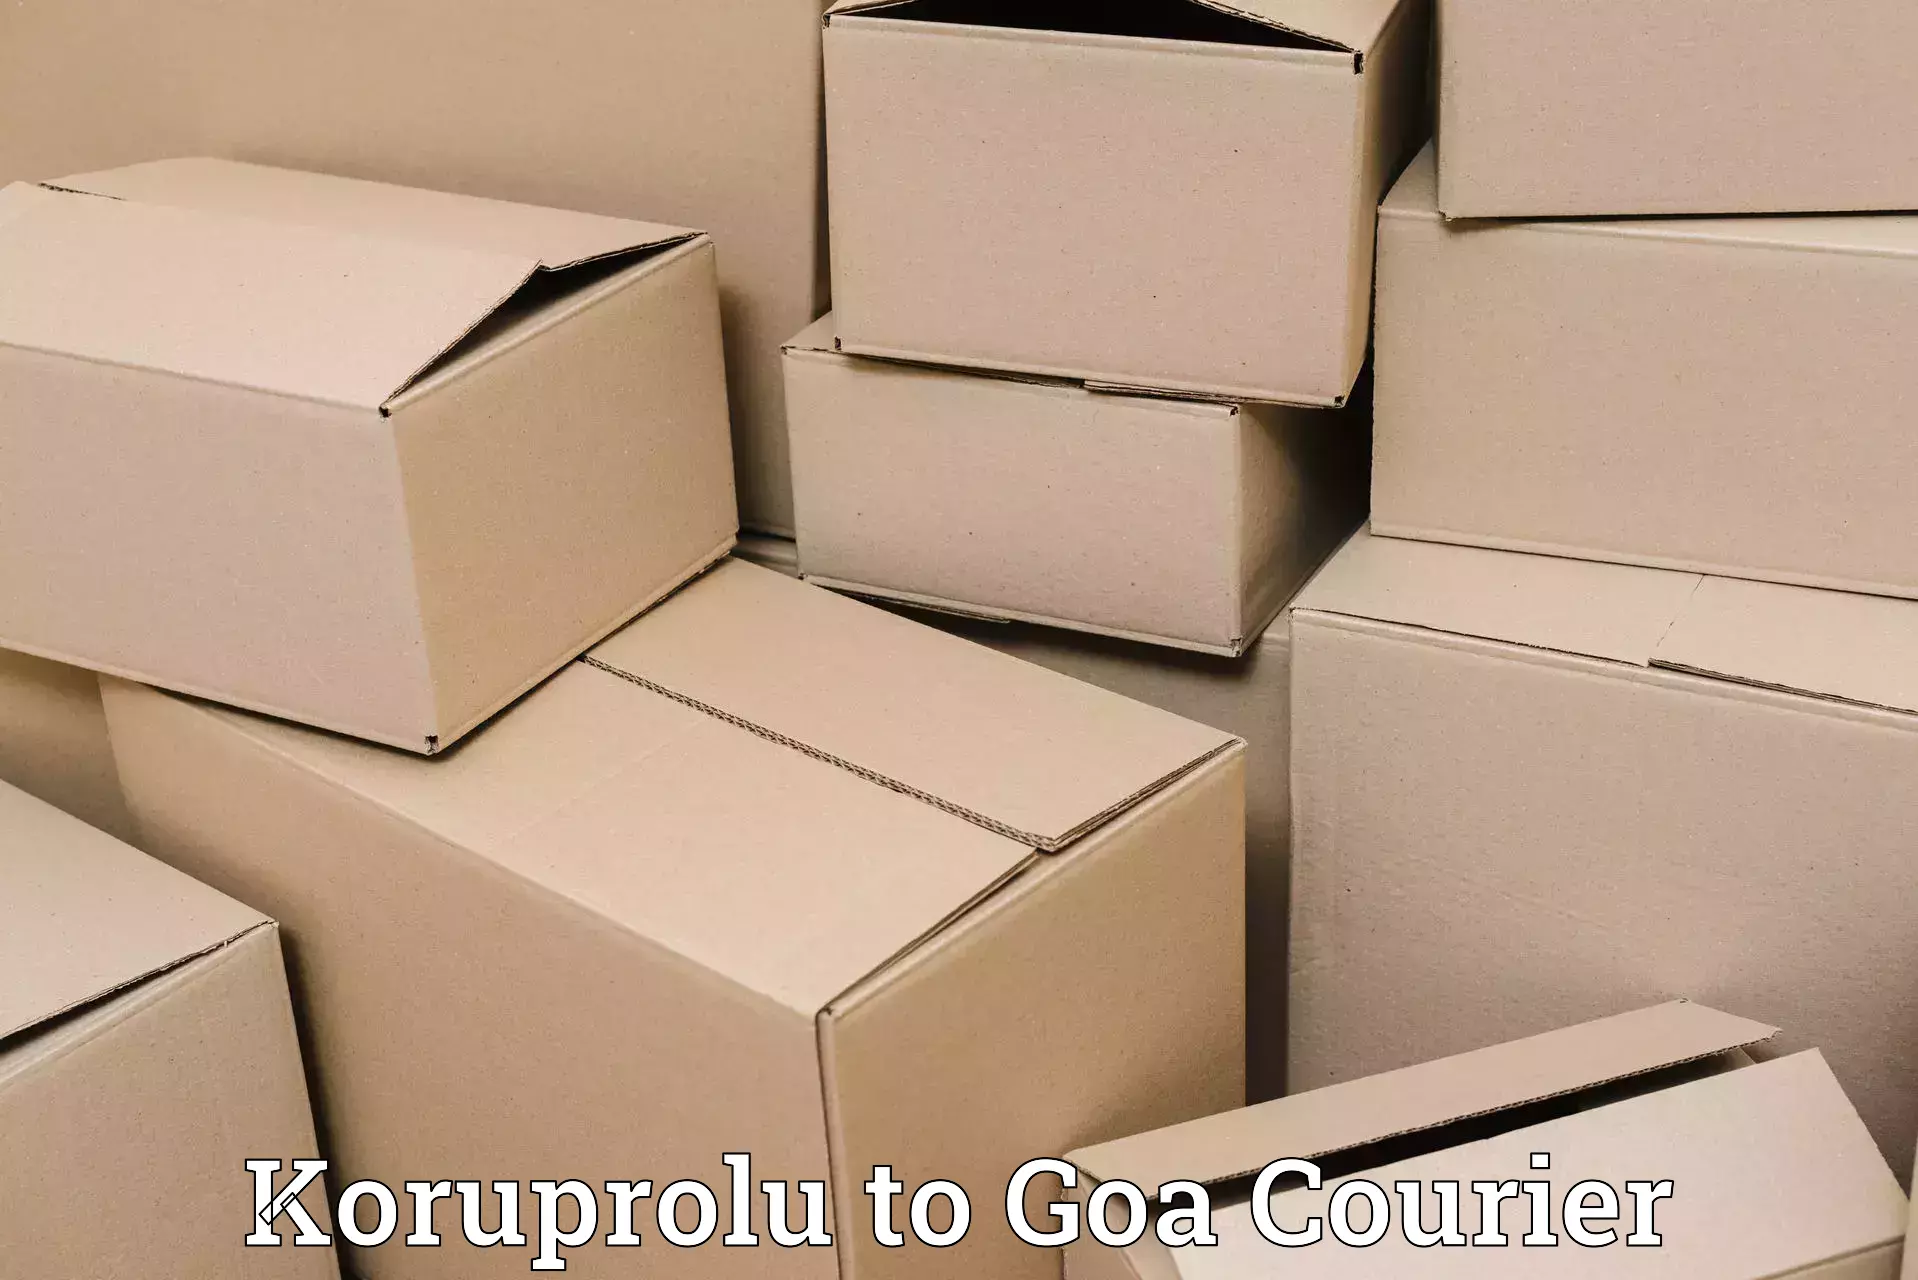 Quality courier services Koruprolu to Vasco da Gama